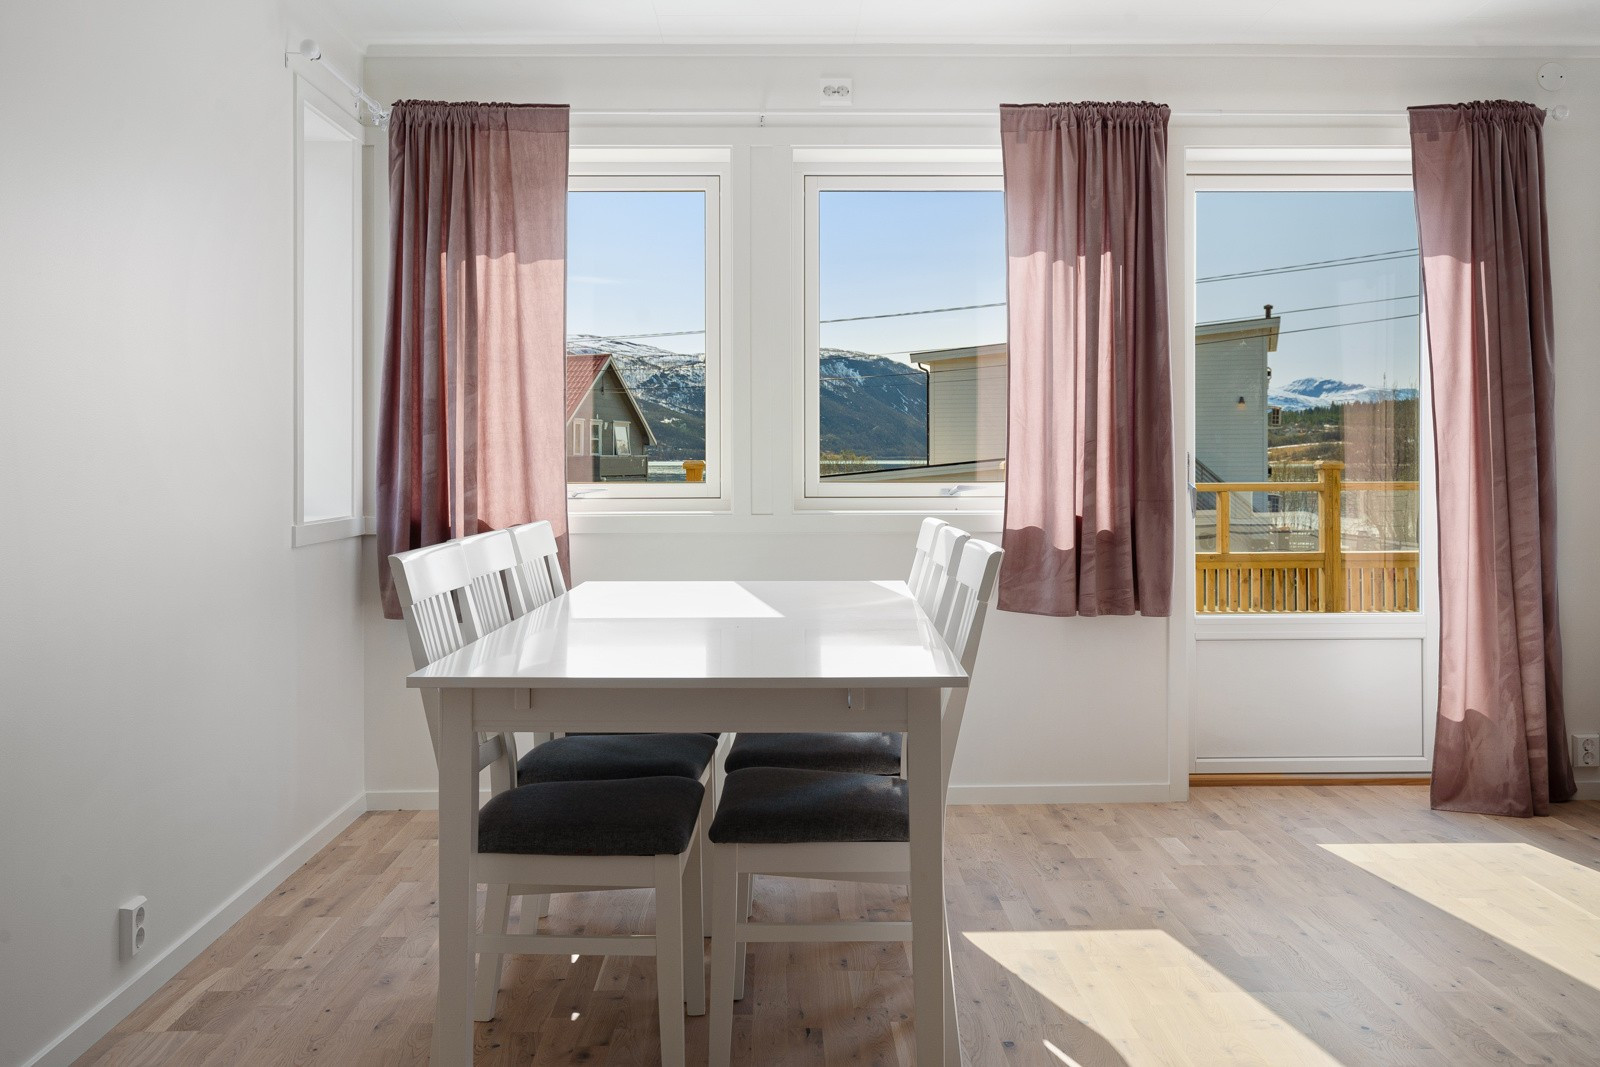 Store vindusflater sikrer rikelig med naturlig lys inn i boligen.